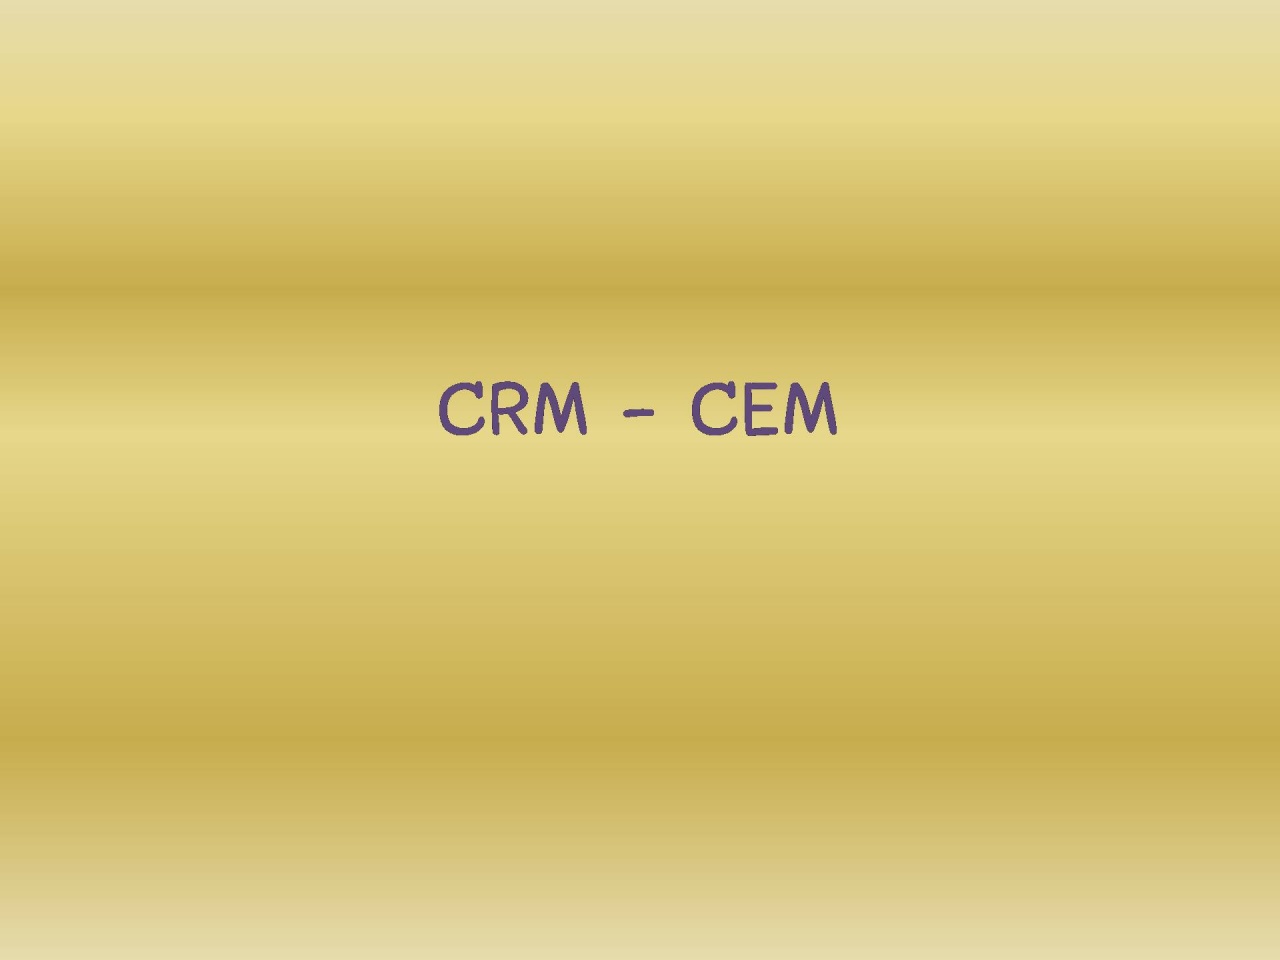 CRM-CEM การบริหารความสัมพันธ์และสร้างประสบการณ์ที่ดีให้กับลูกค้า